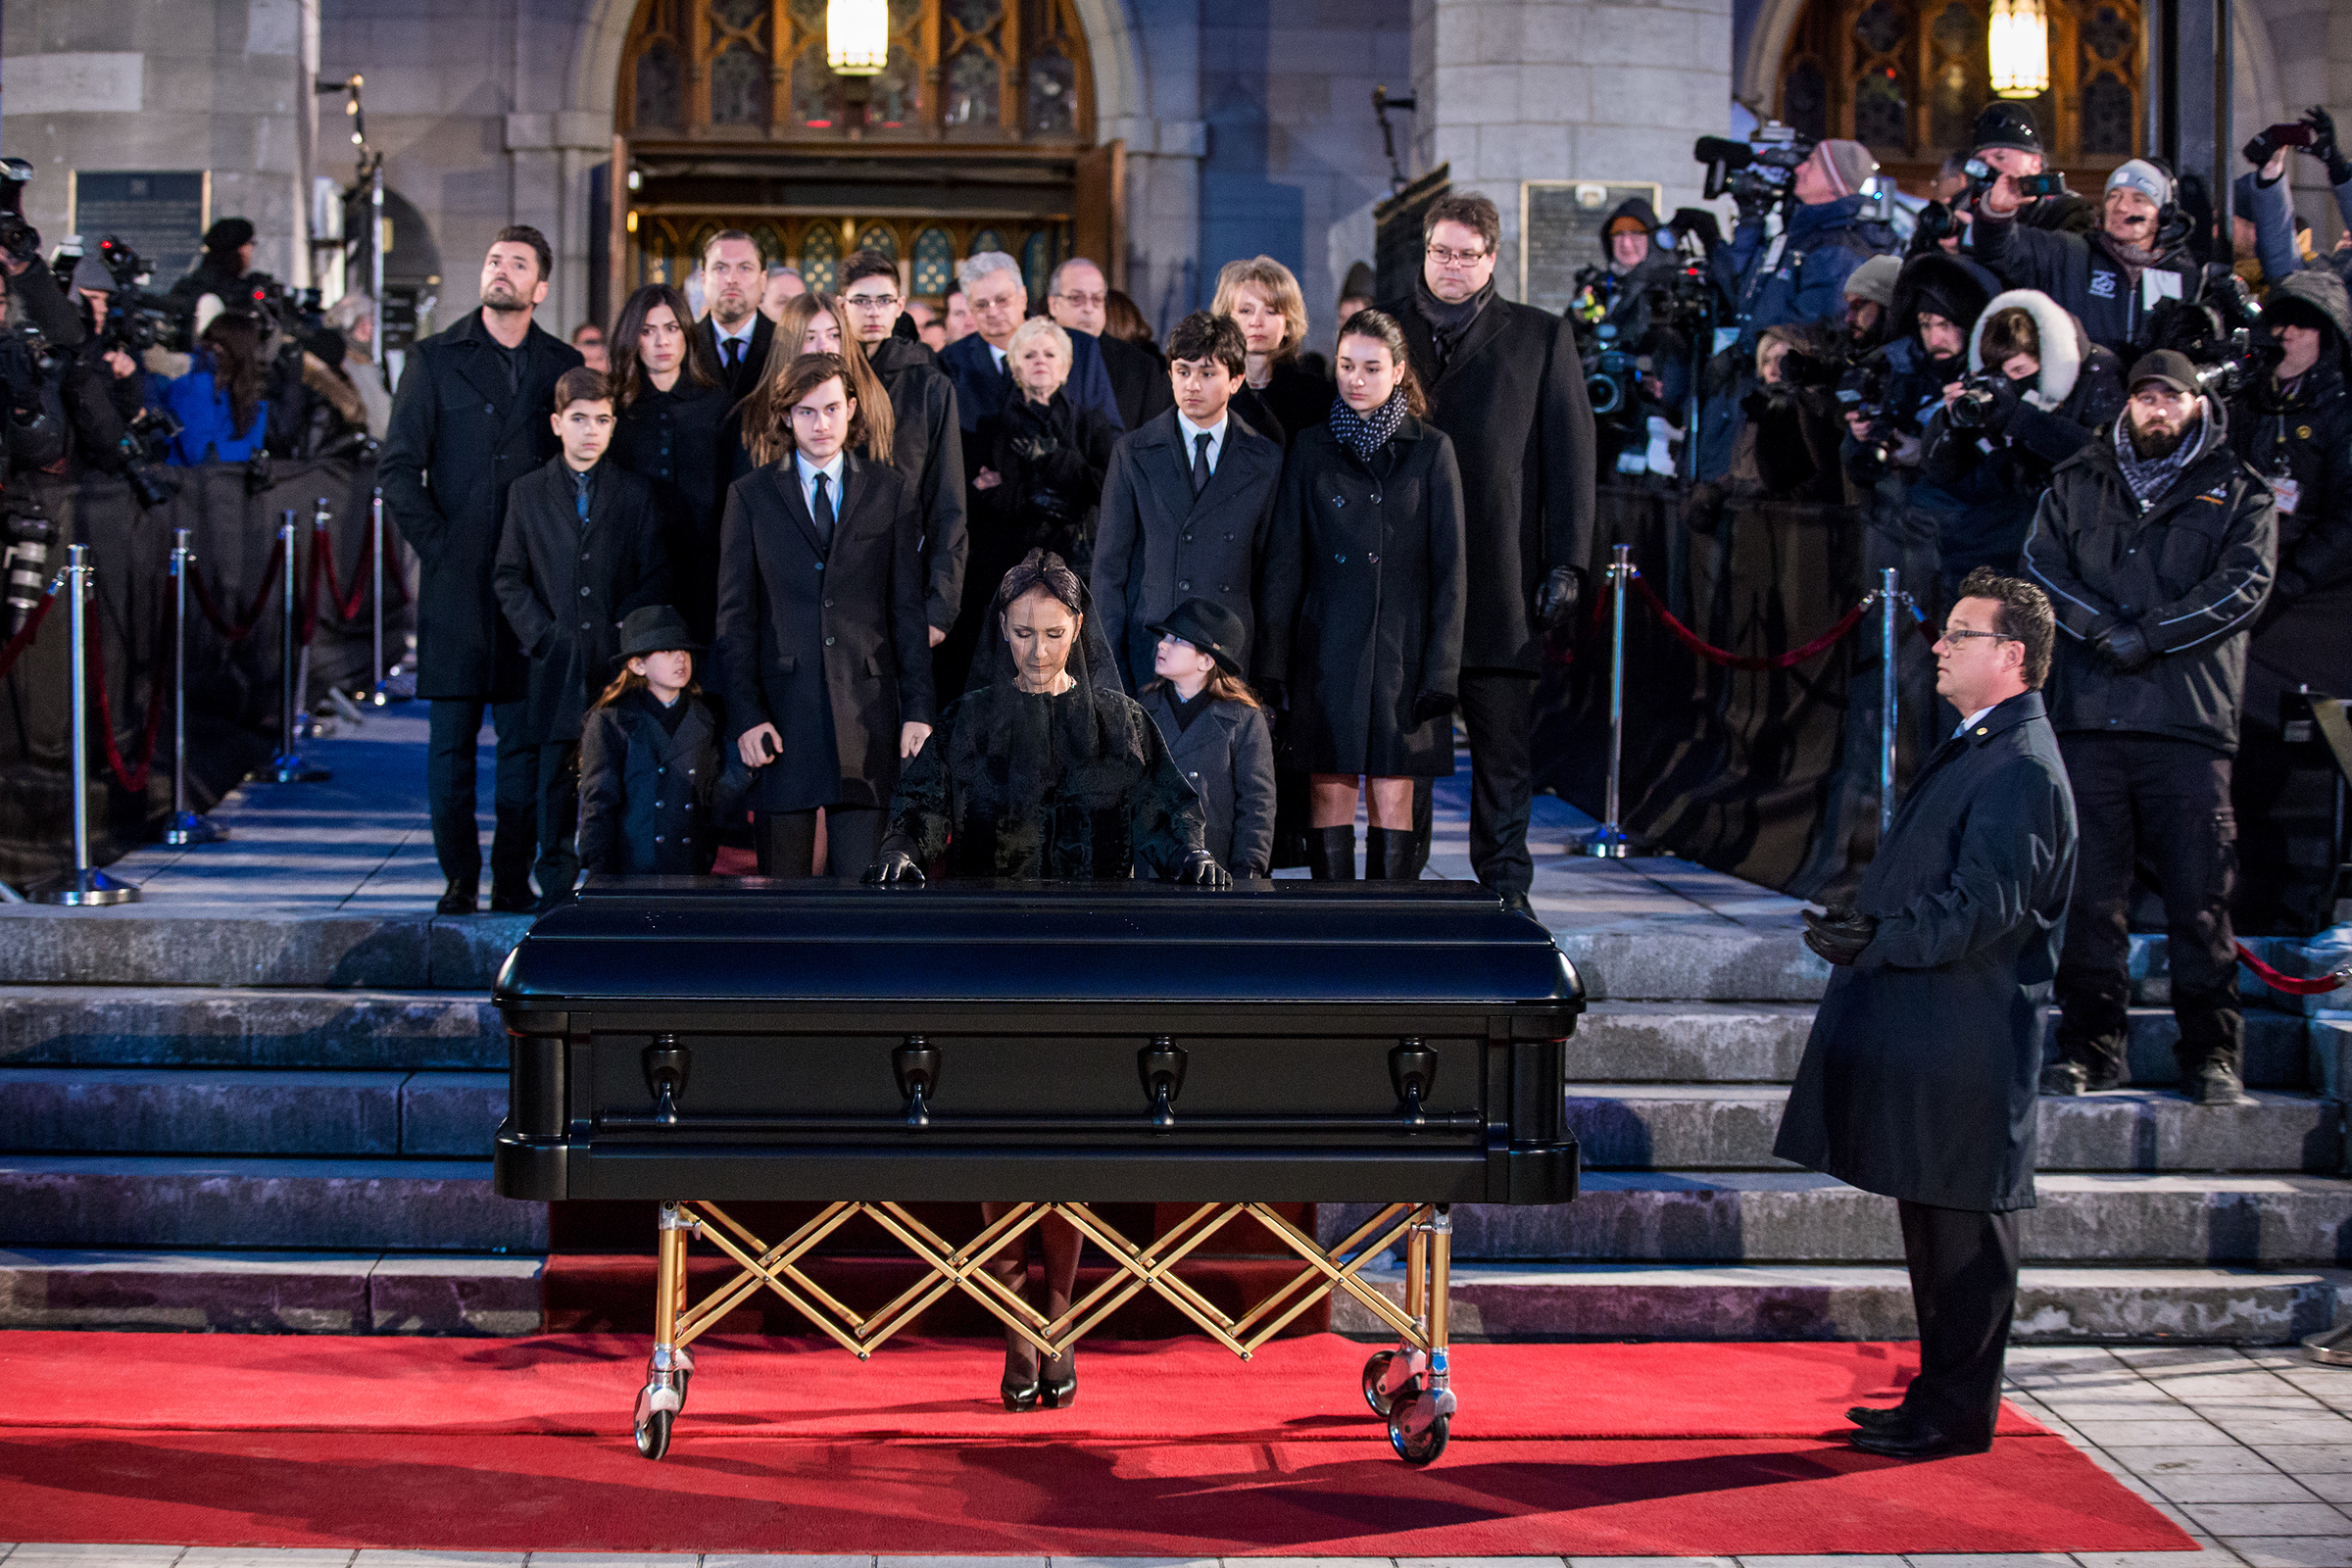  Les fans de Céline Dion pleurent René Angélil à Montréal  67981507-dc5c-4731-adc0-4960dd730b66_ORIGINAL